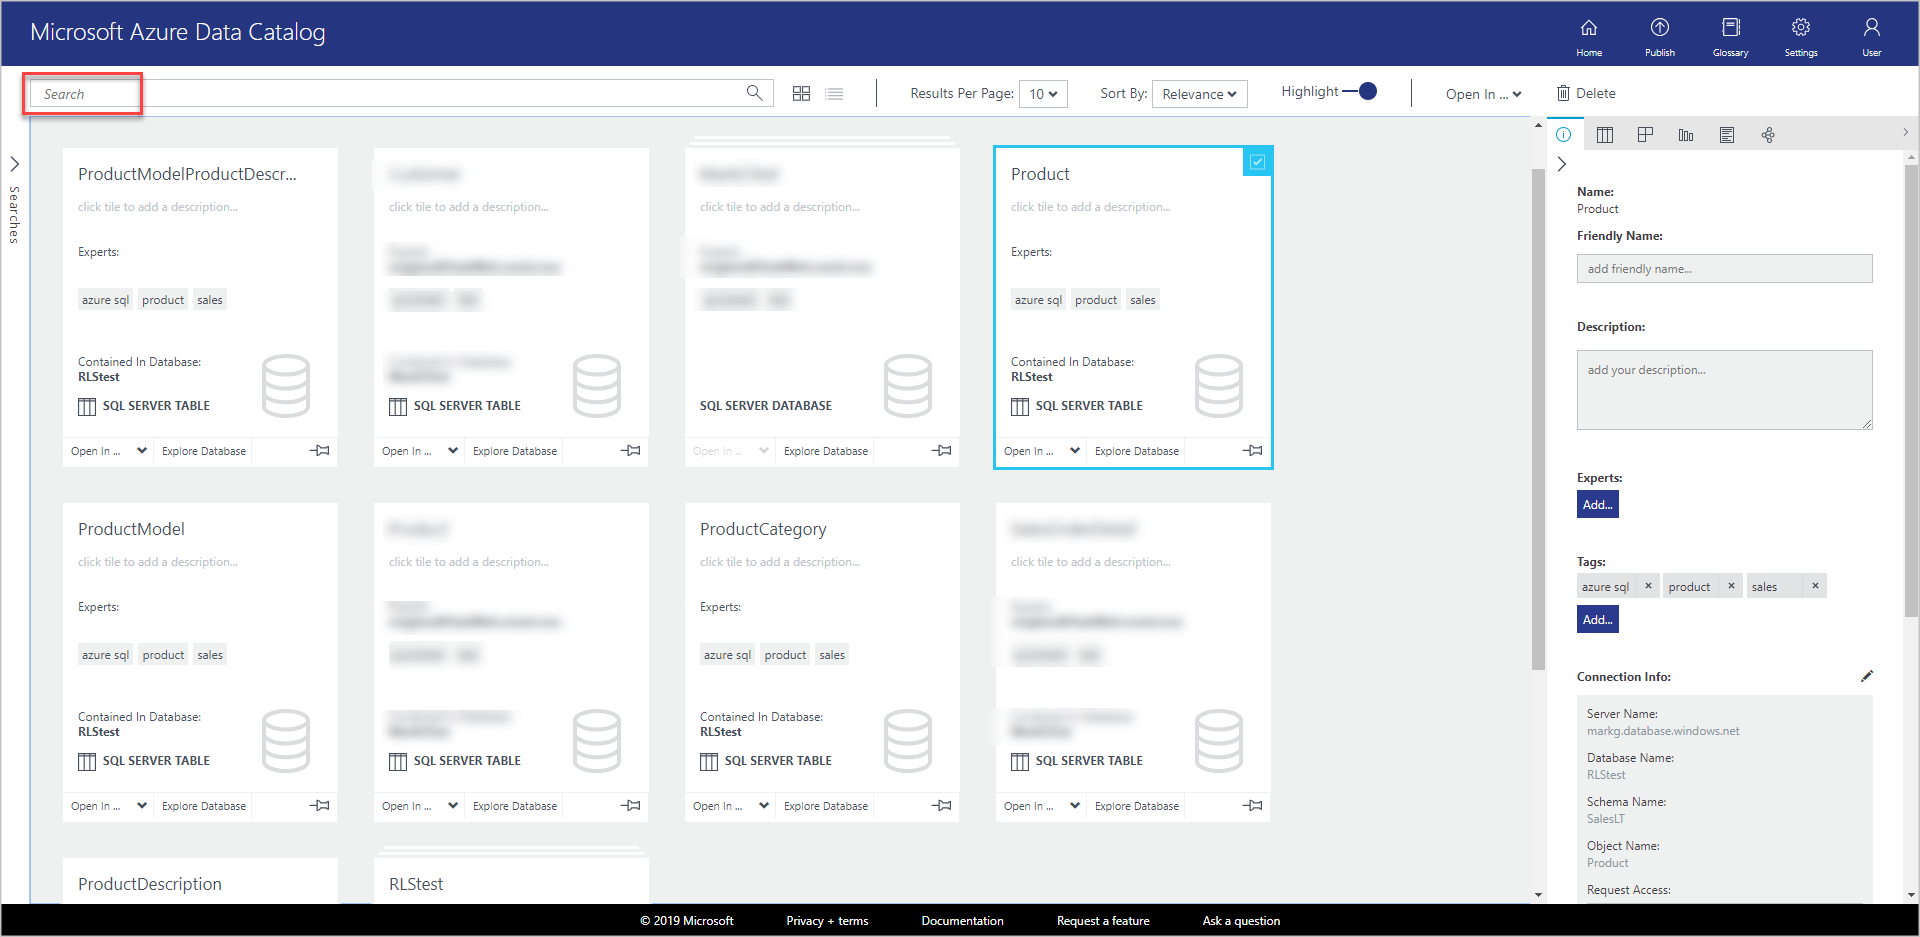 Dans la fenêtre Microsoft Azure Data Catalog, il existe de nouvelles vignettes dans l’affichage grille pour chacun des objets inscrits.